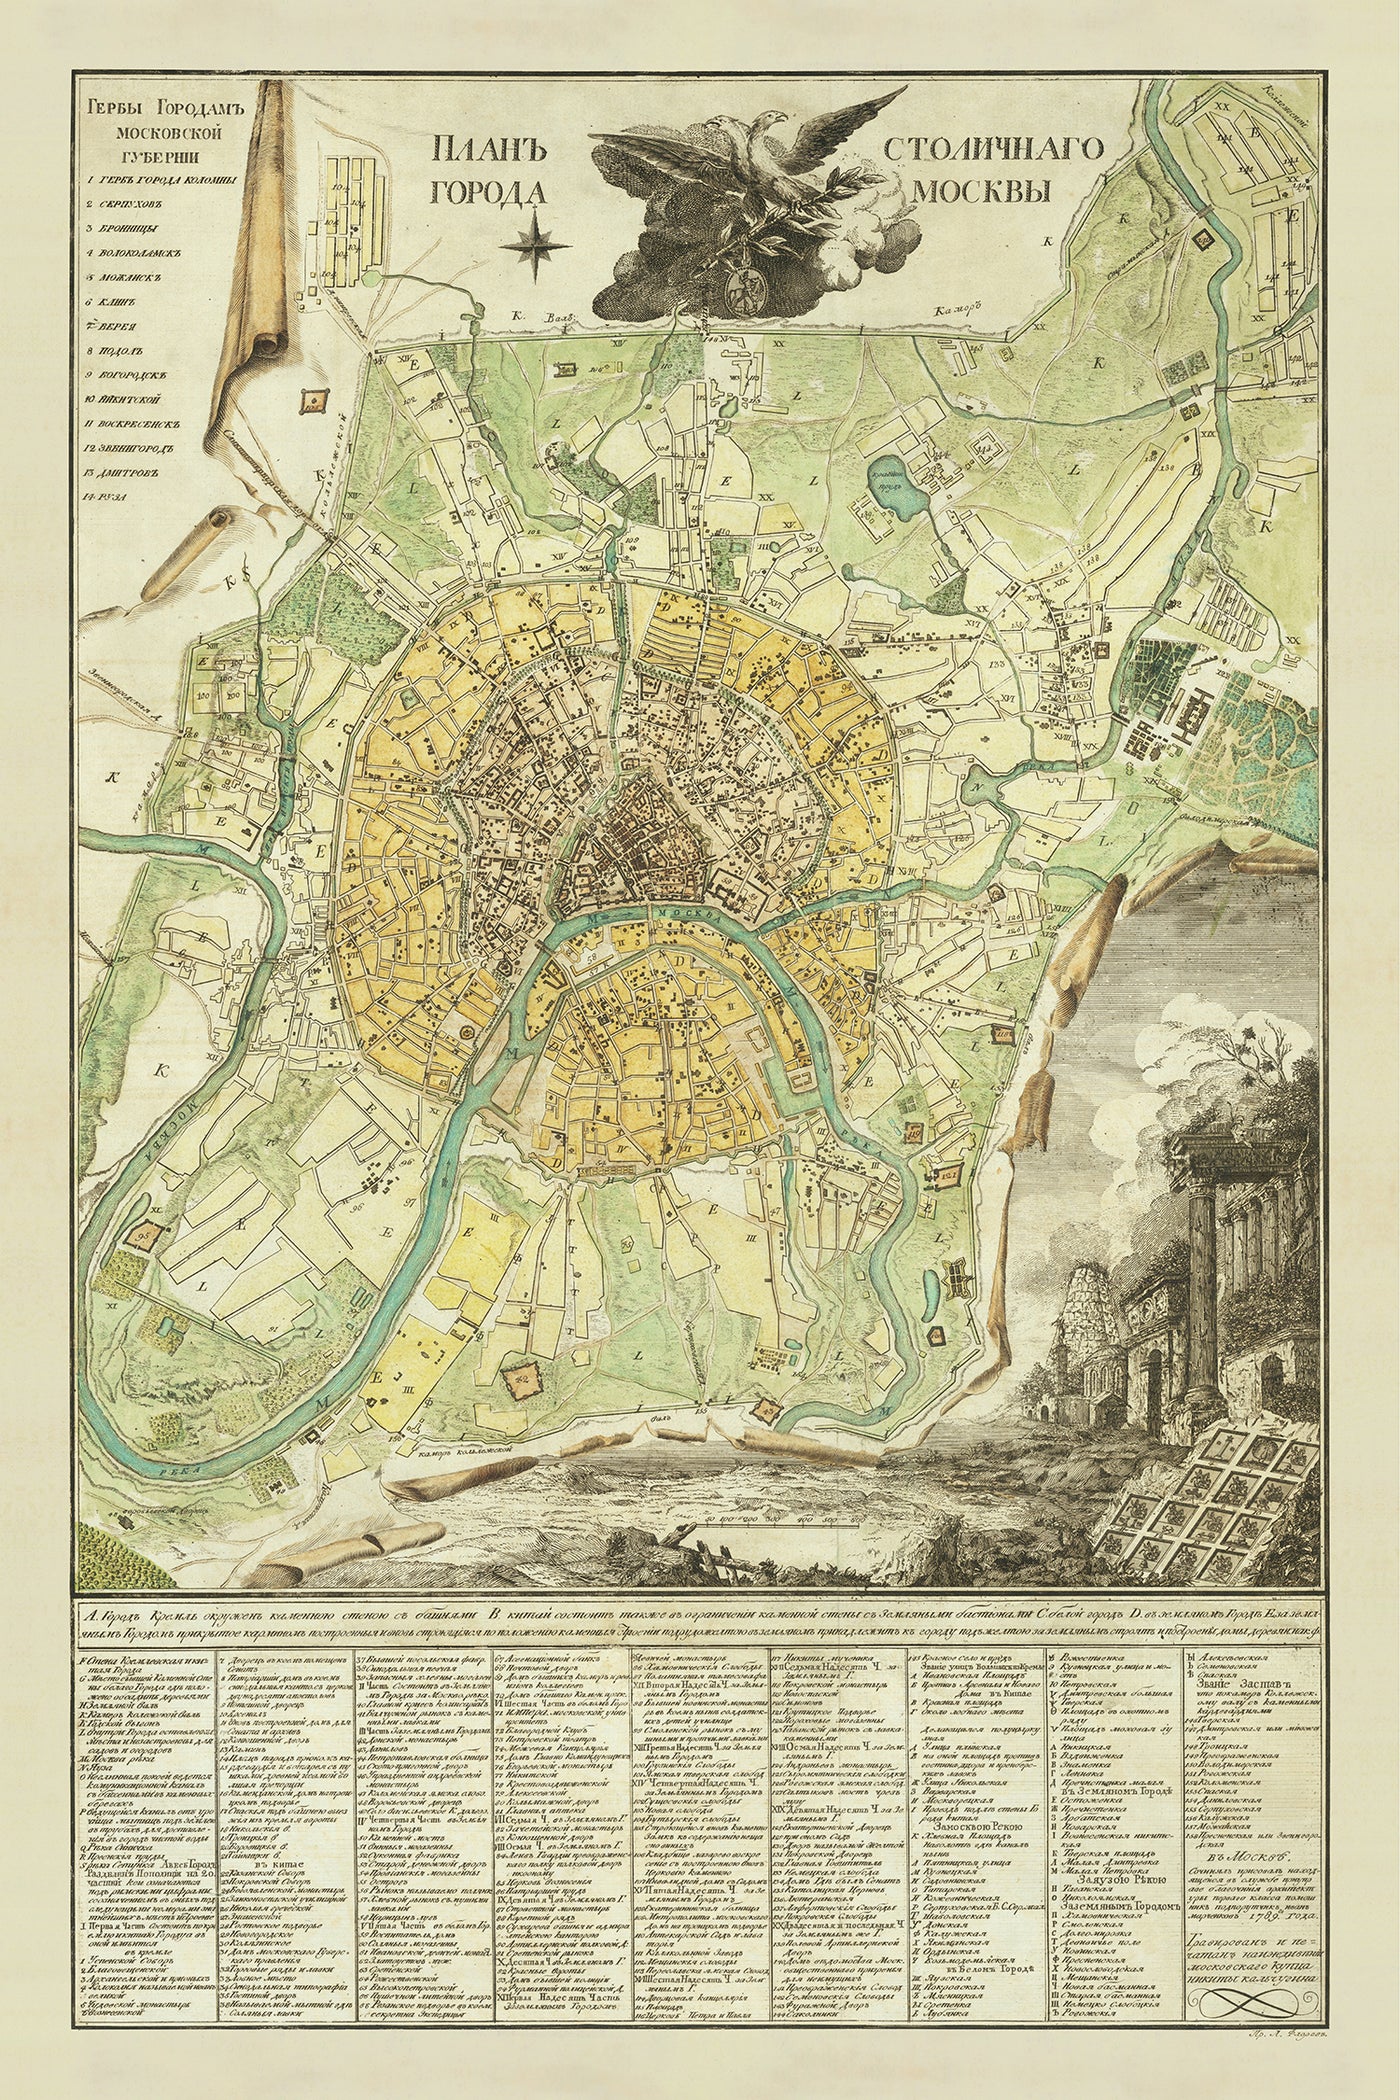 Alte Karte von Moskau von Iwan Marchenkov, 1789: Kreml, Basilius-Kathedrale, Roter Platz, Moskwa, Samoskworetschje